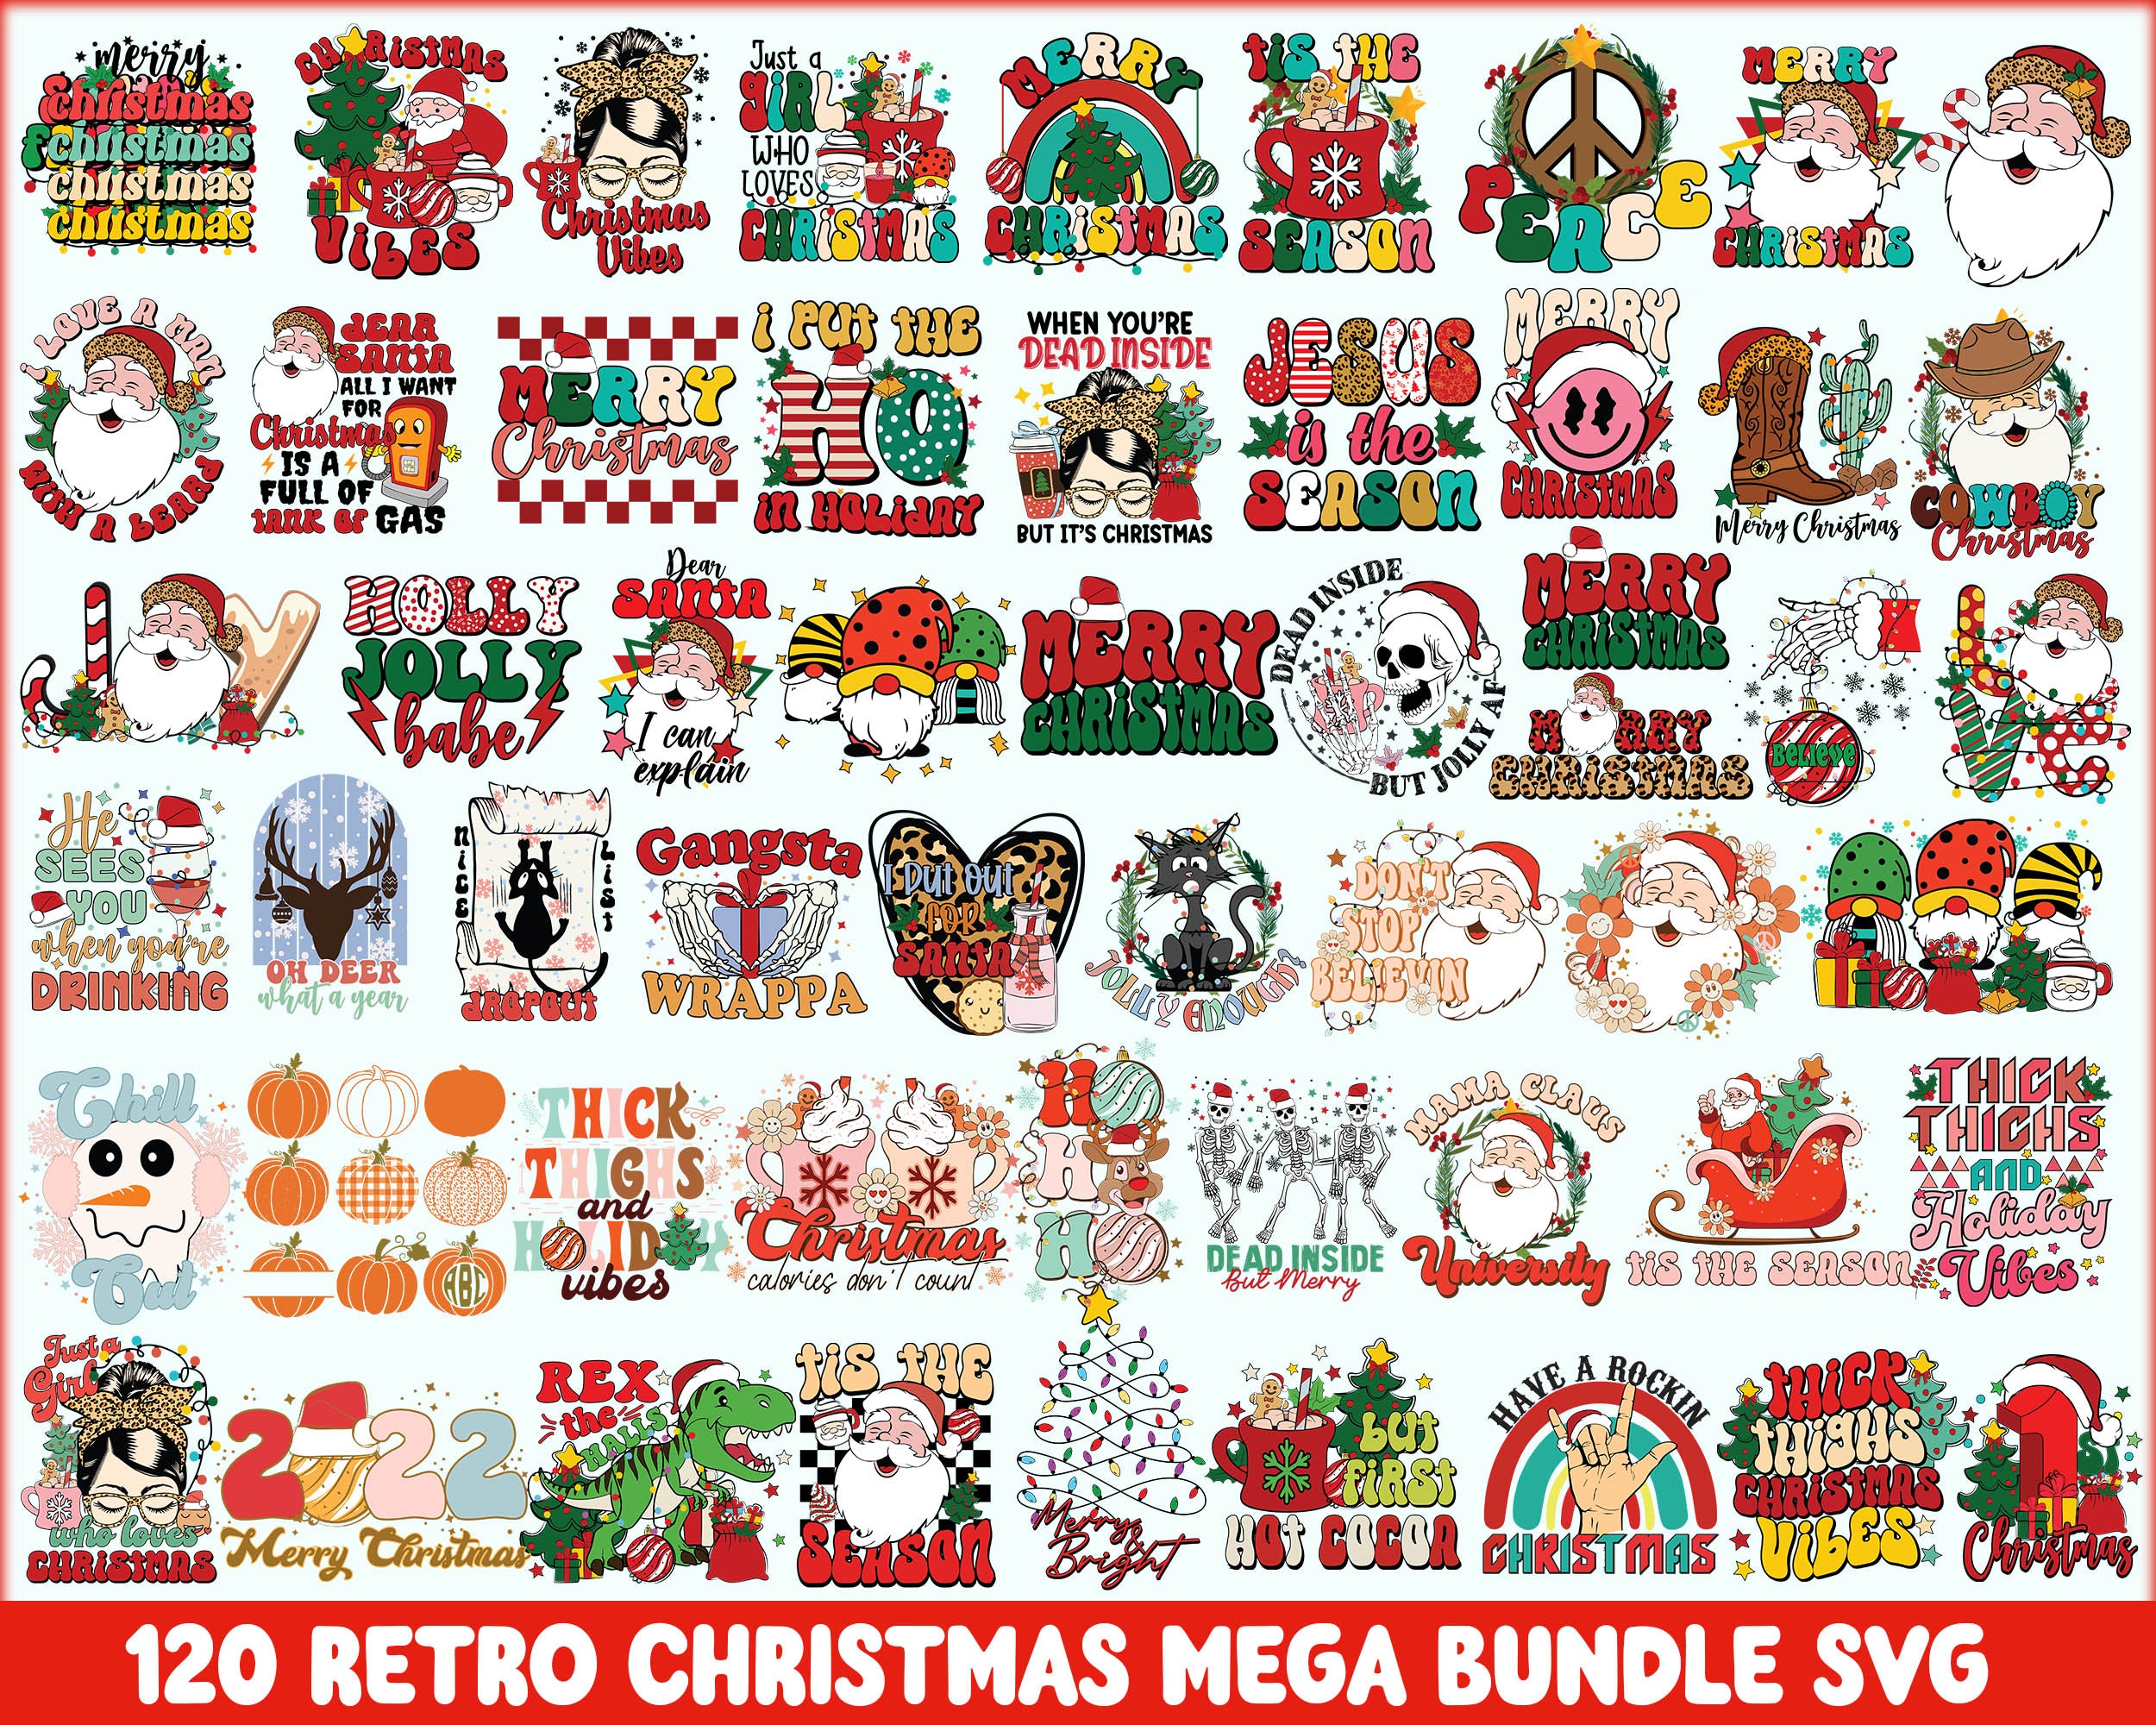 120 Retro Christmas bundle, Christmas SVG bundle, Christmas digital bundle, Designs bundle, Digital files, CRM02112203